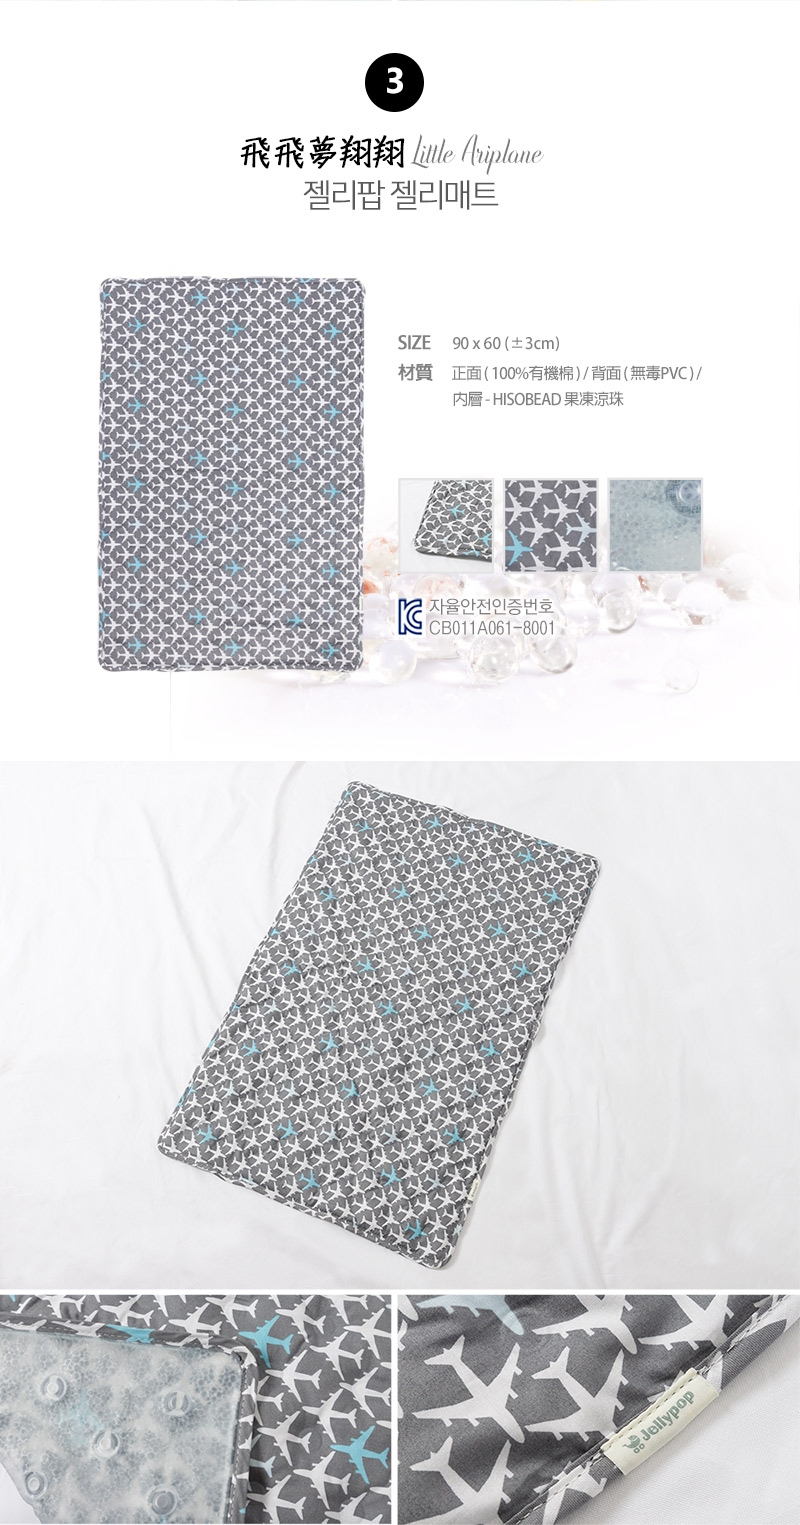 韓國Jellymat 微顆粒酷涼珠有機棉果凍床墊 (共6款可選)